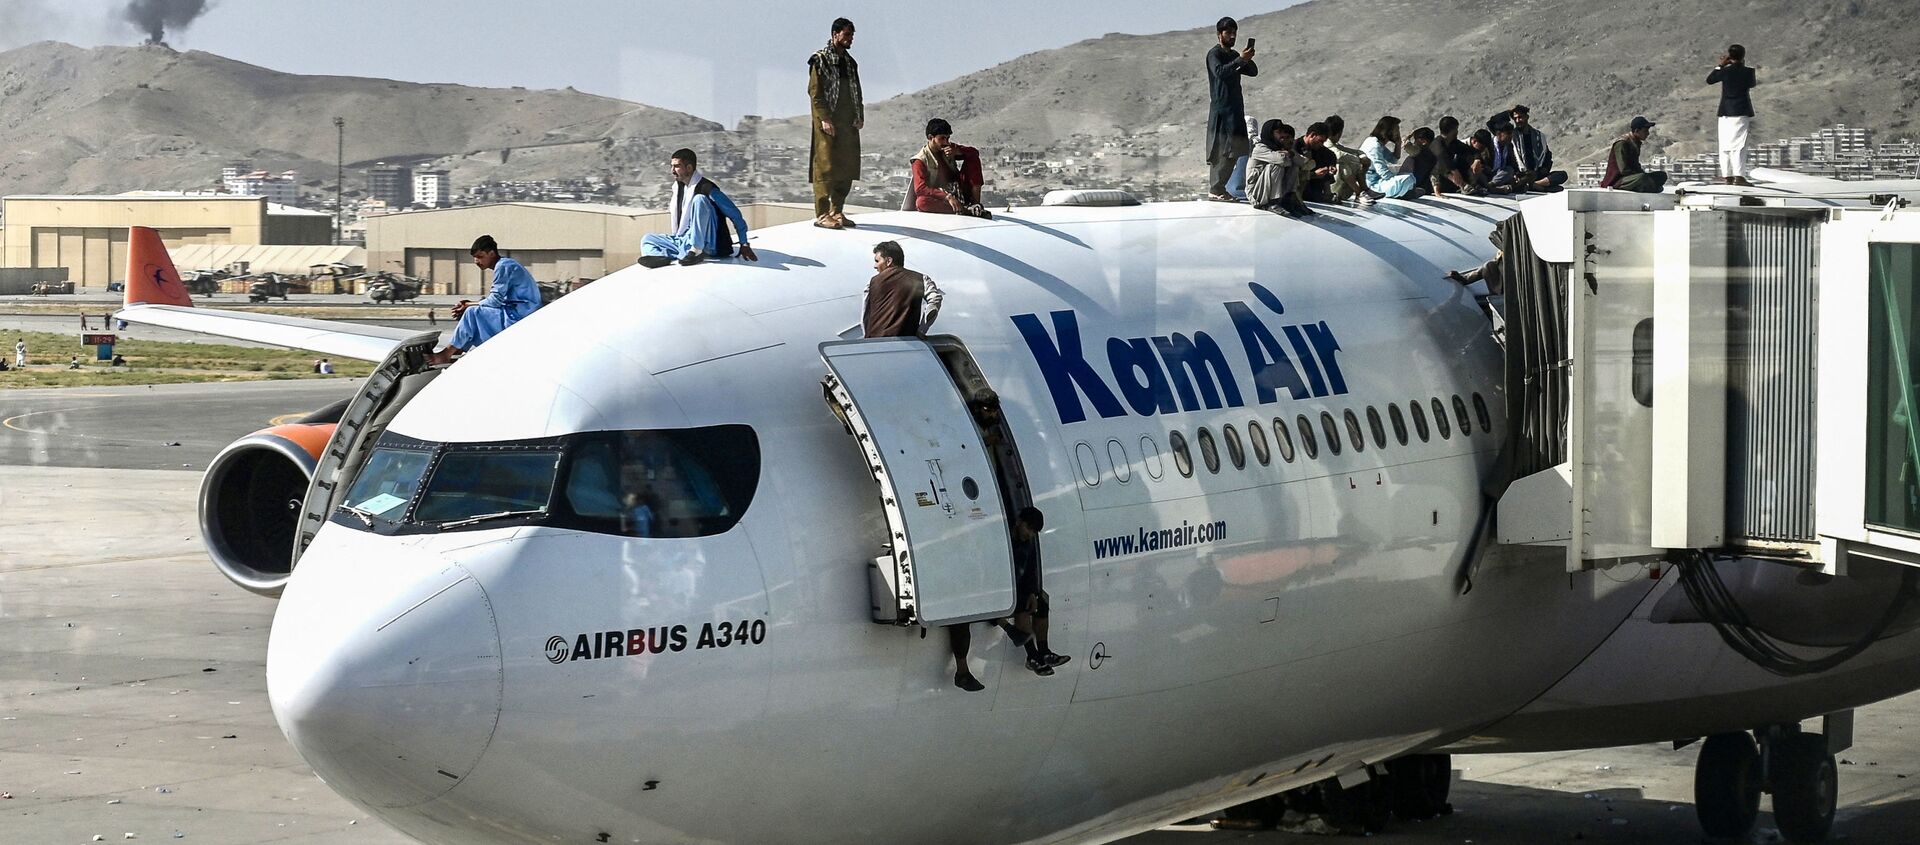 Des Afghans en attente d'évacuation à l’aéroport de Kaboul - Sputnik Afrique, 1920, 18.08.2021